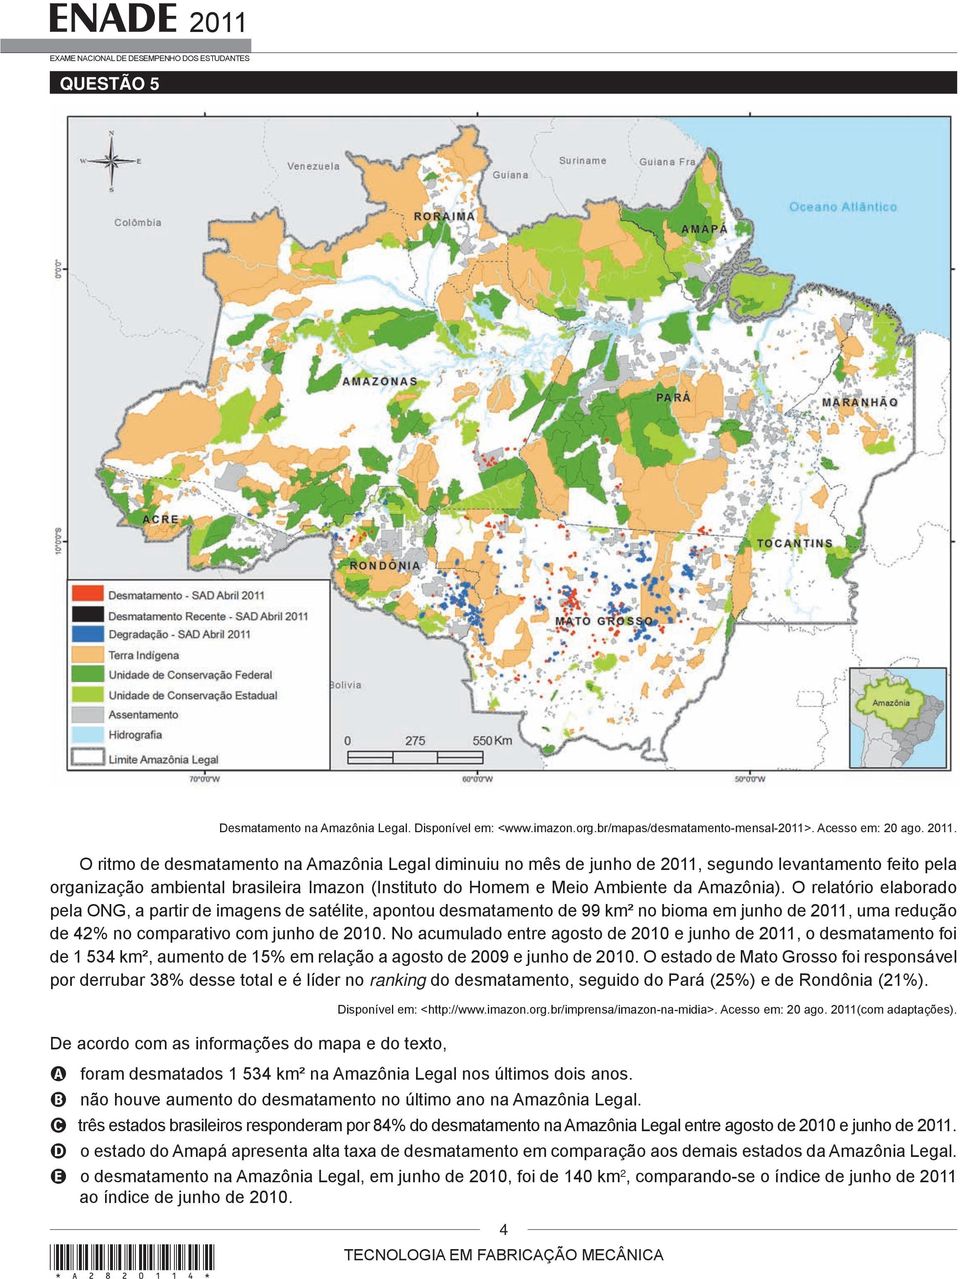 O relatório elaborado pela ONG, a partir de imagens de satélite, apontou desmatamento de 99 km² no bioma em junho de 2011, uma redução de 42% no comparativo com junho de 2010.